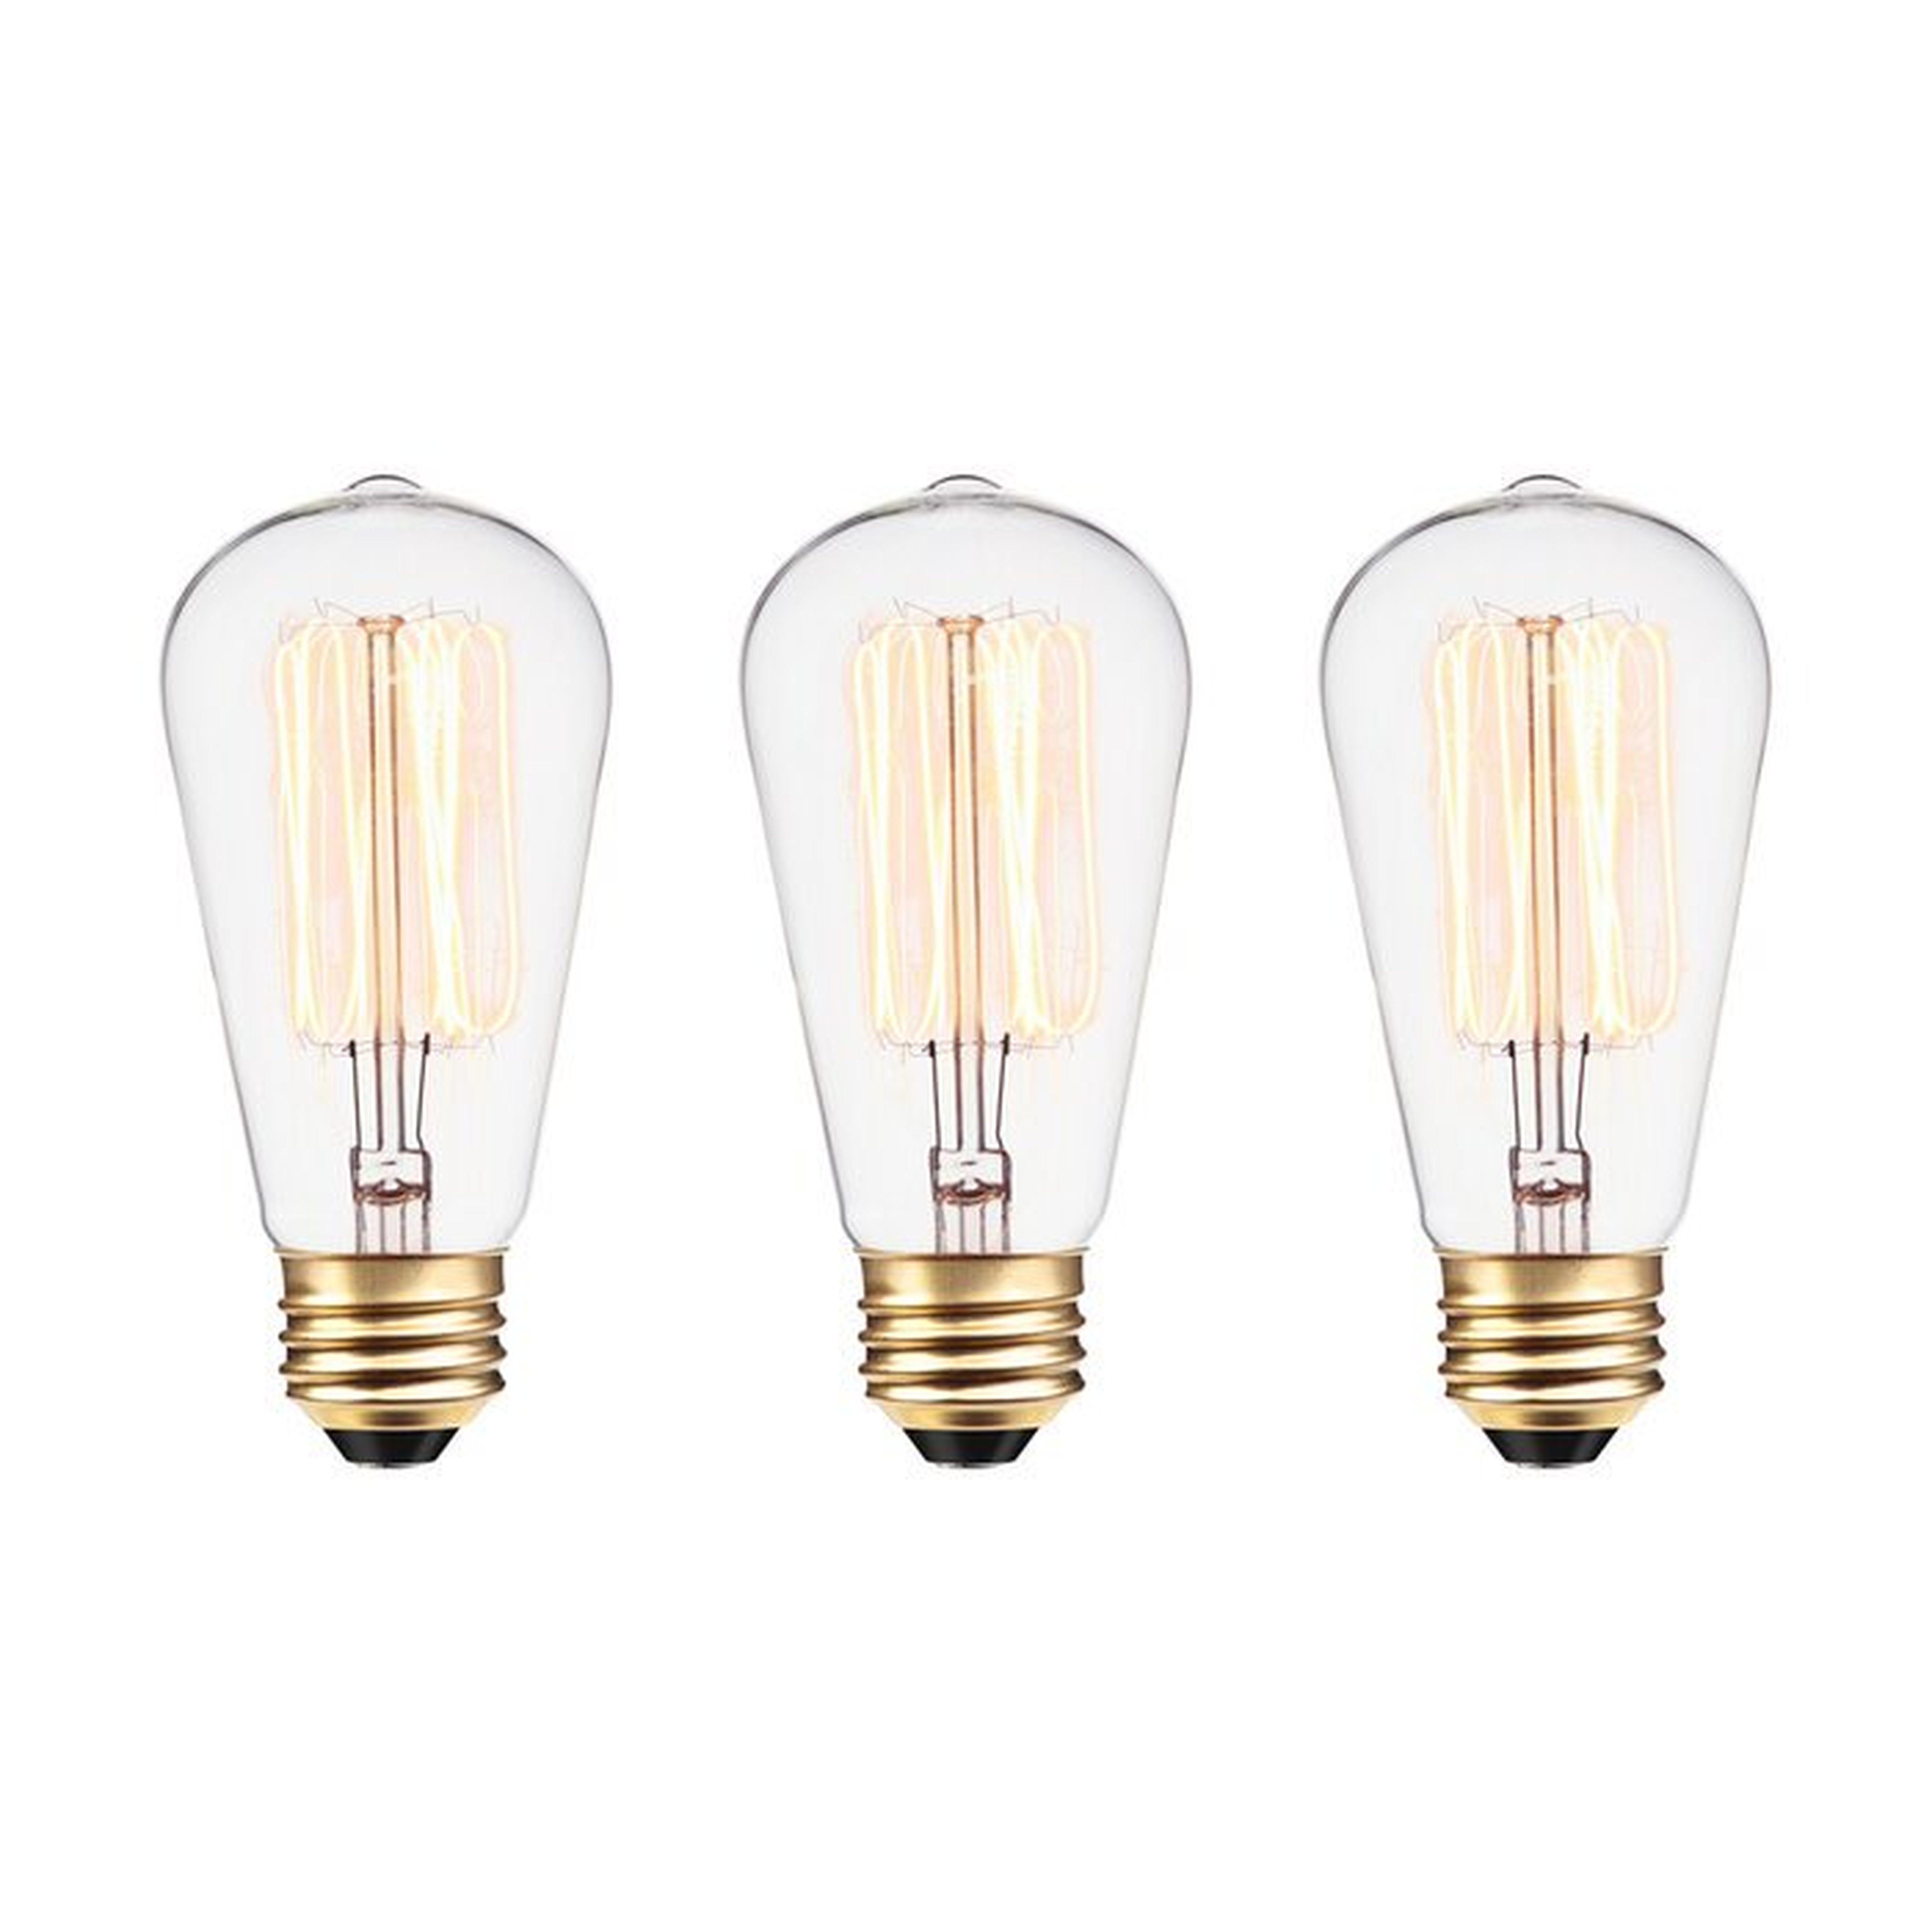 60 Watt A19 Incandescent, Dimmable  Light Bulb, Warm White (2700K) E26/Medium (Standard) Base - Wayfair